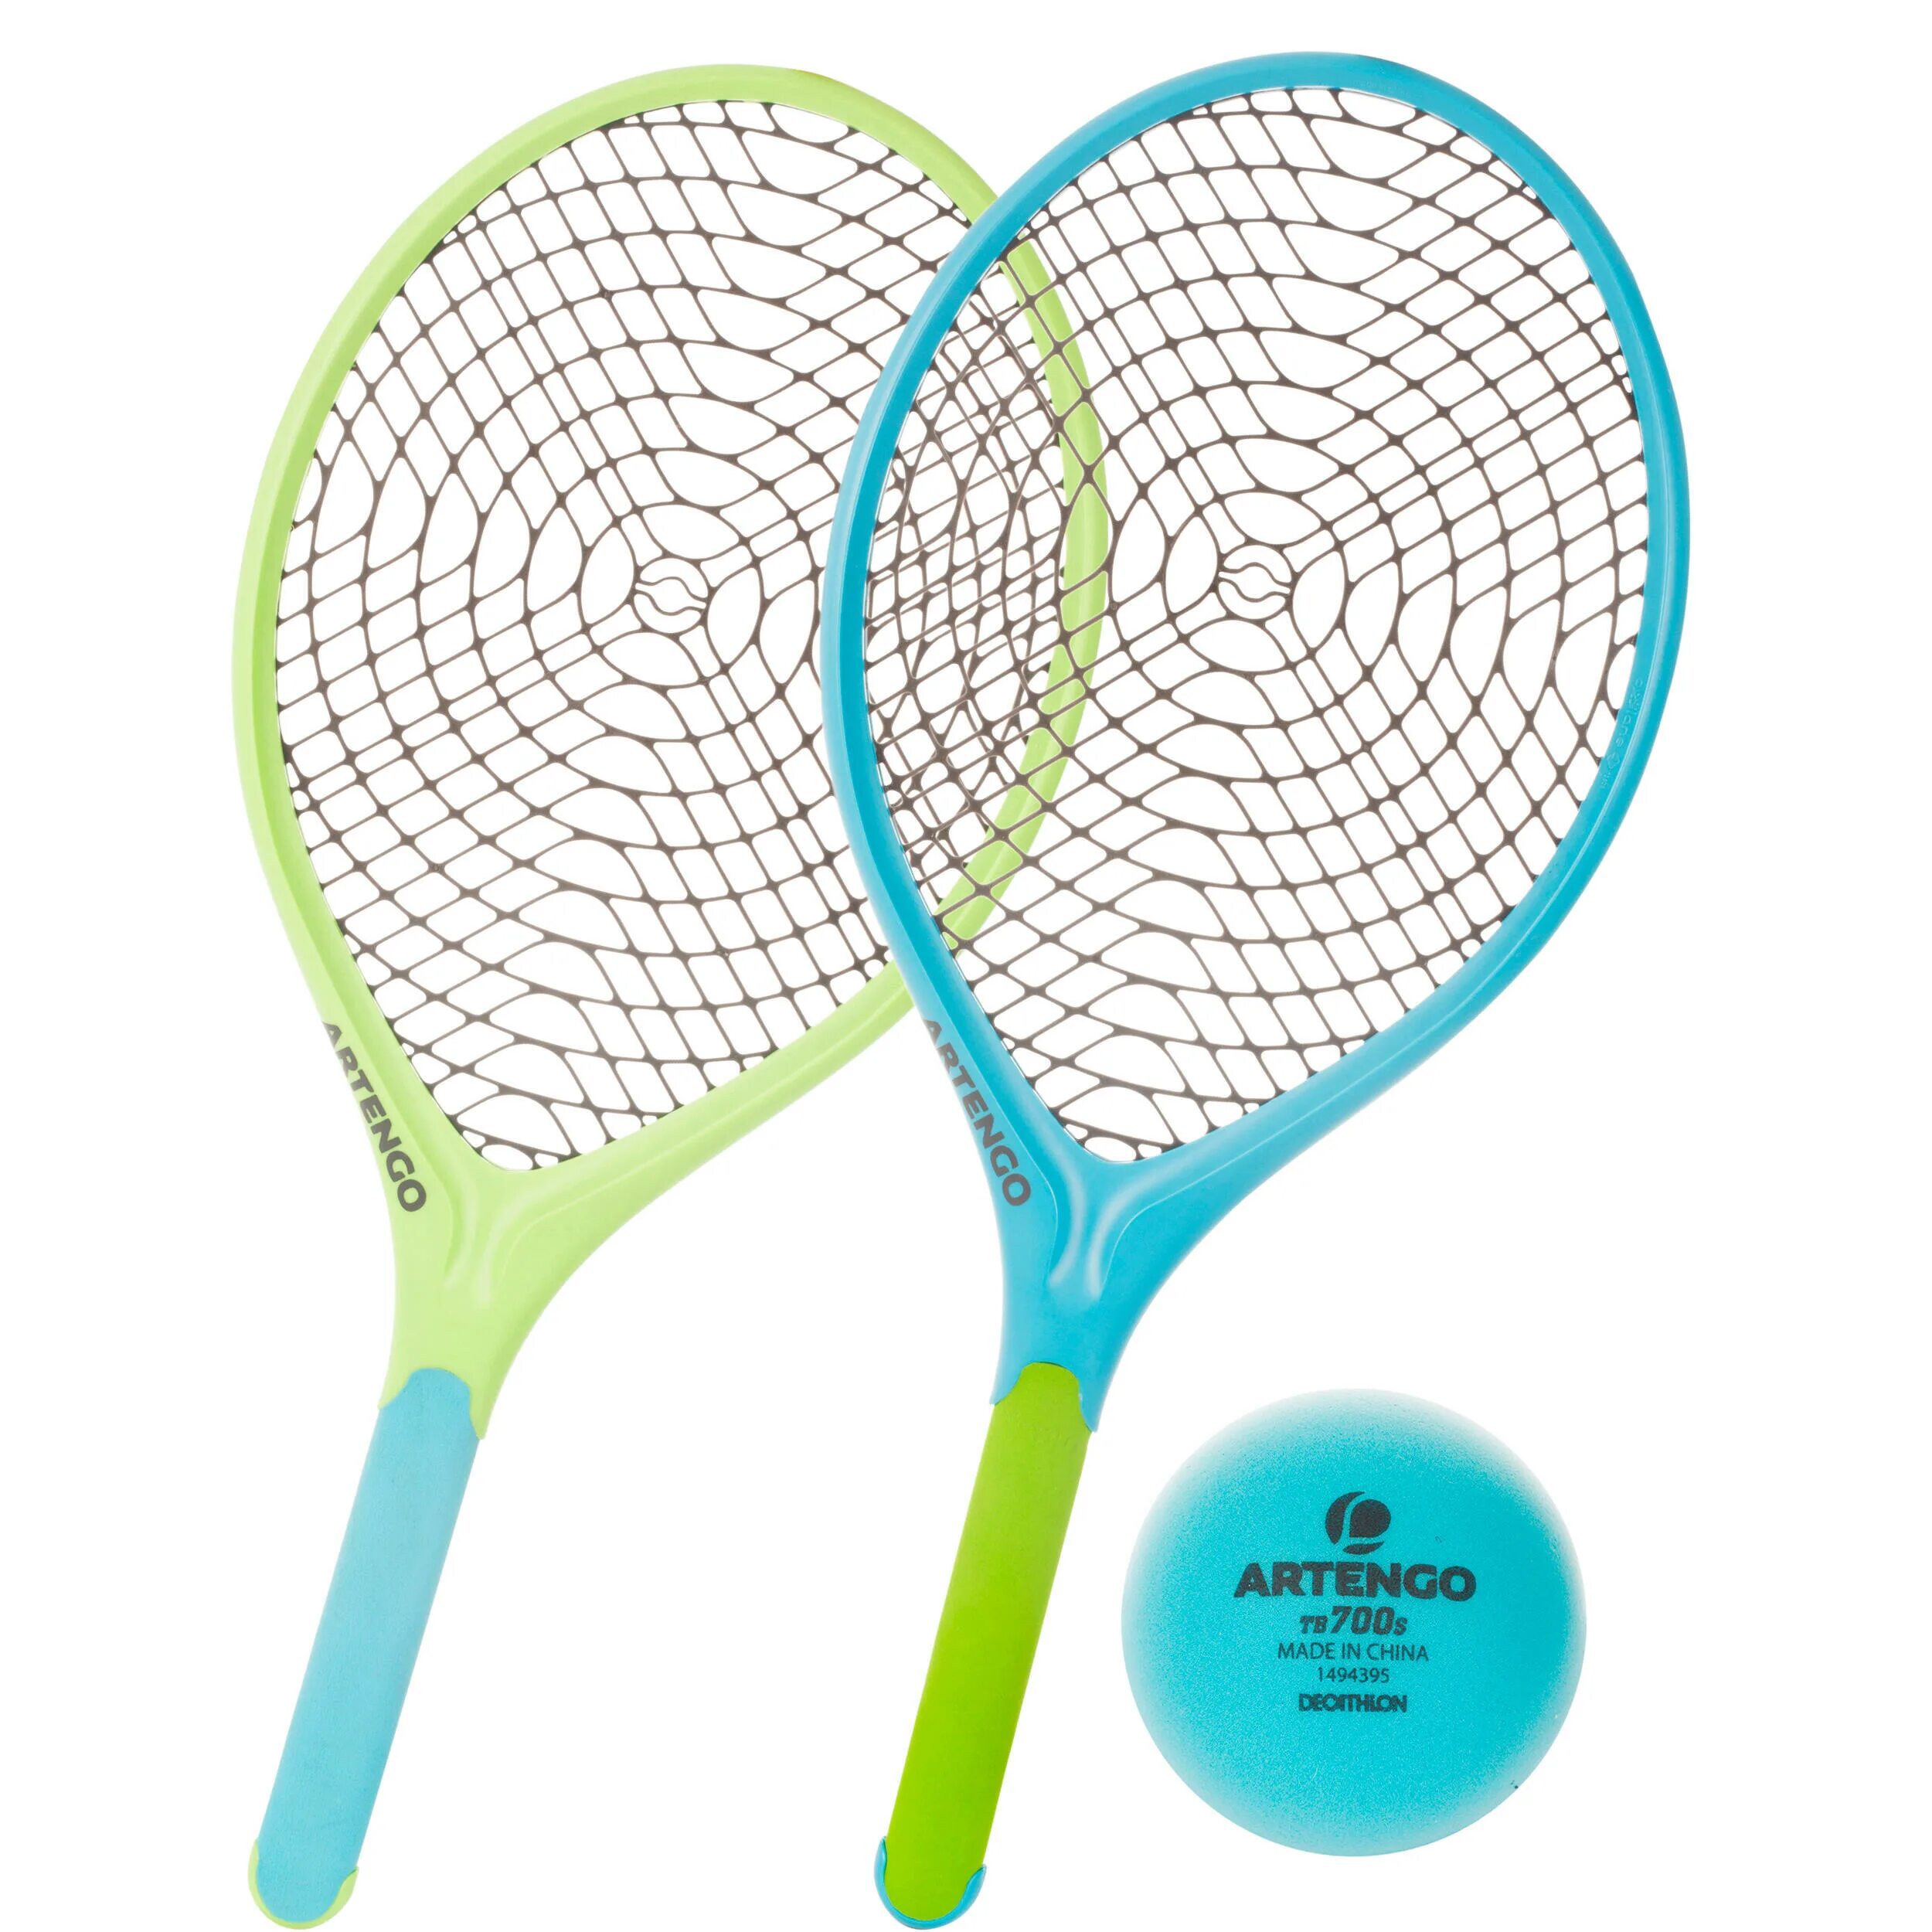 ARTENGO ракетки для большого тенниса. ARTENGO набор для тенниса. ARTENGO ракетки для настольного тенниса. Теннисная ракетка Декатлон. Ракетки тенниса детей